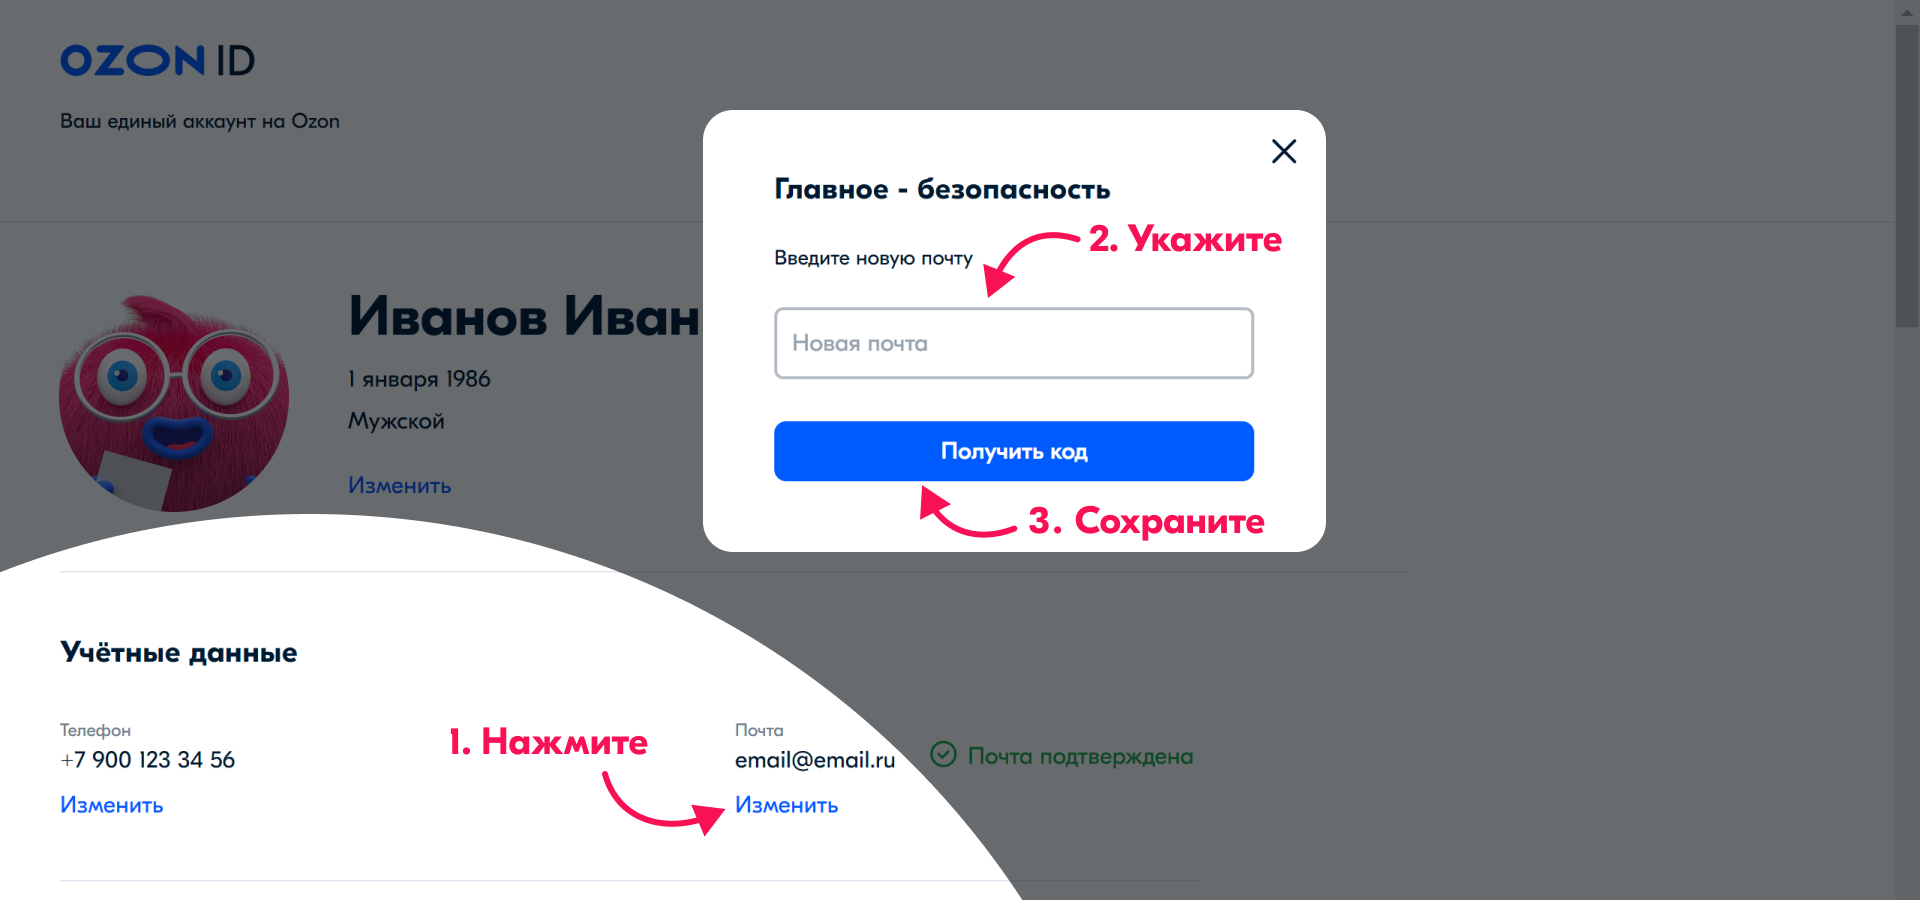 Как восстановить доступ к аккаунту ВКонтакте